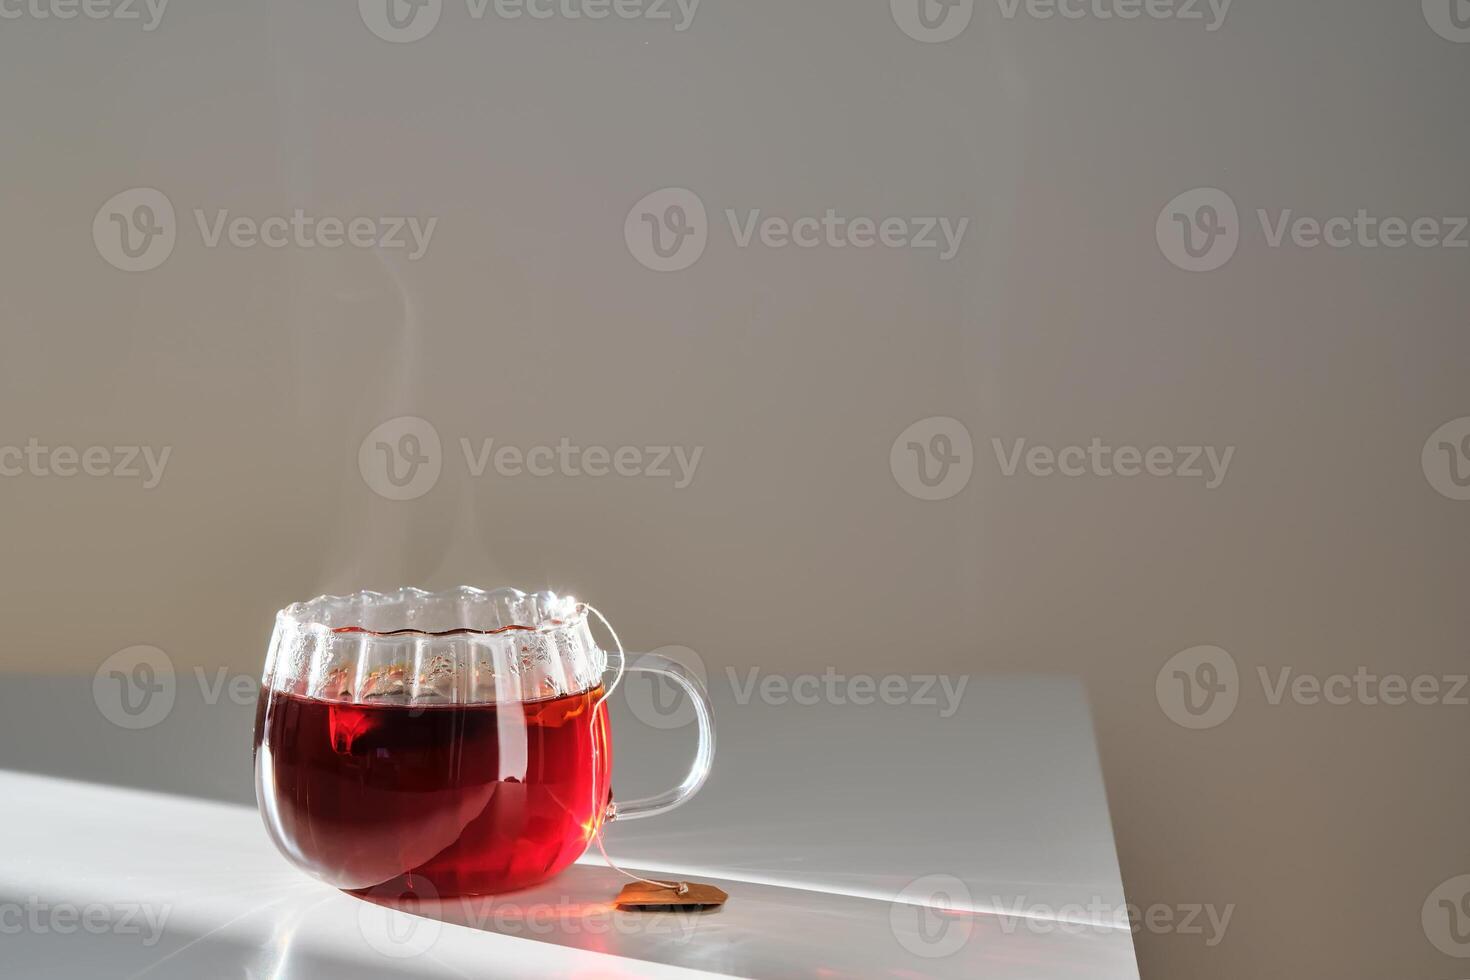 bicchiere boccale con caldo nero tè su il tavolo. foto